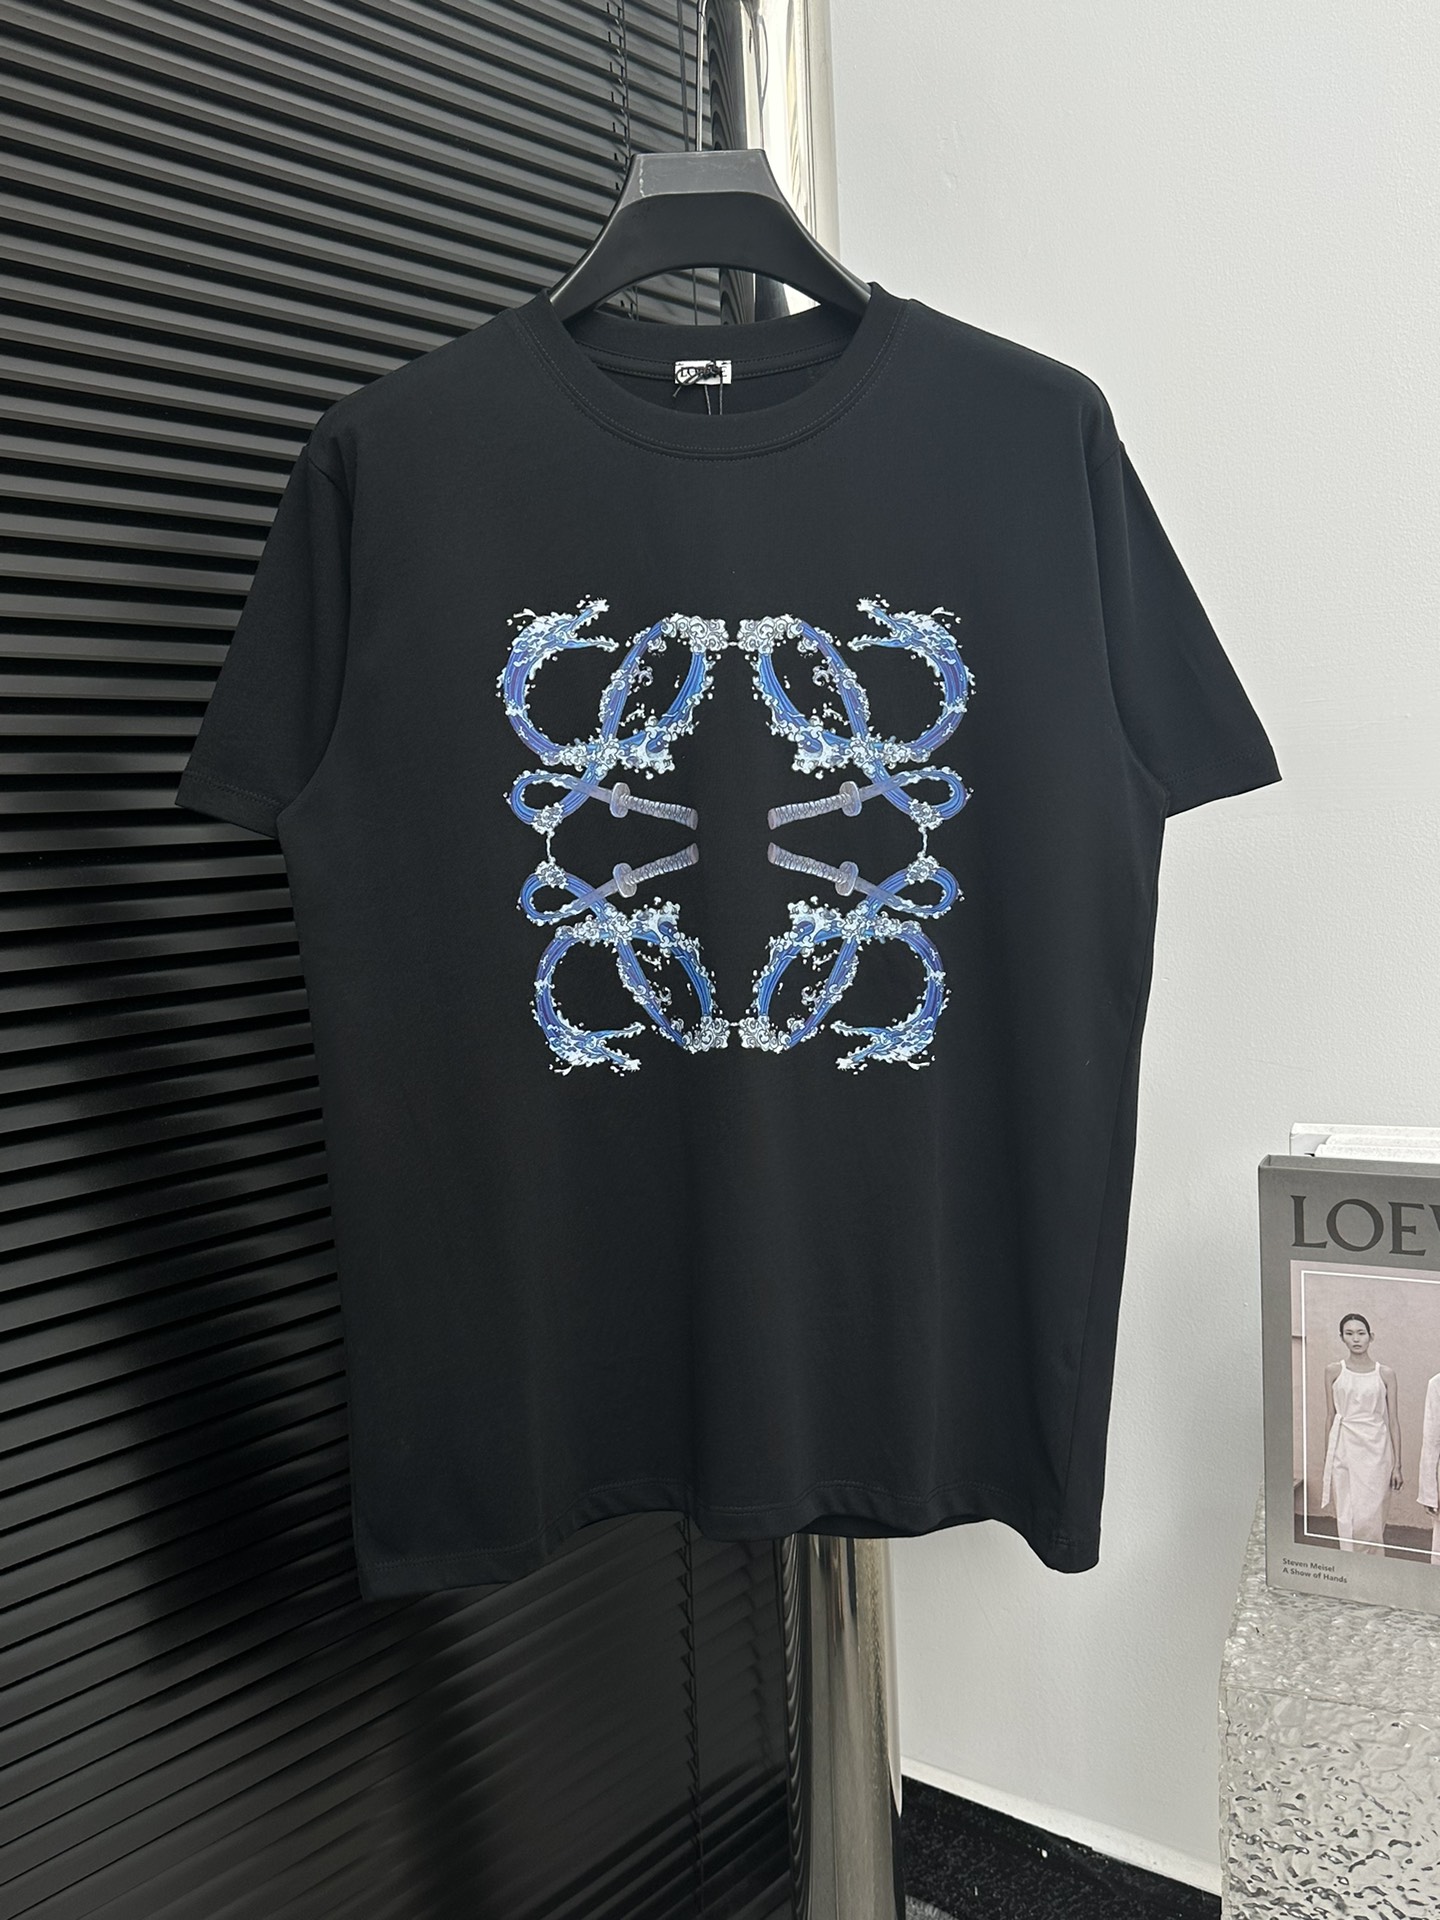 Loewe AAA+
 Clothing T-Shirt Black White Printing Cotton Knitting